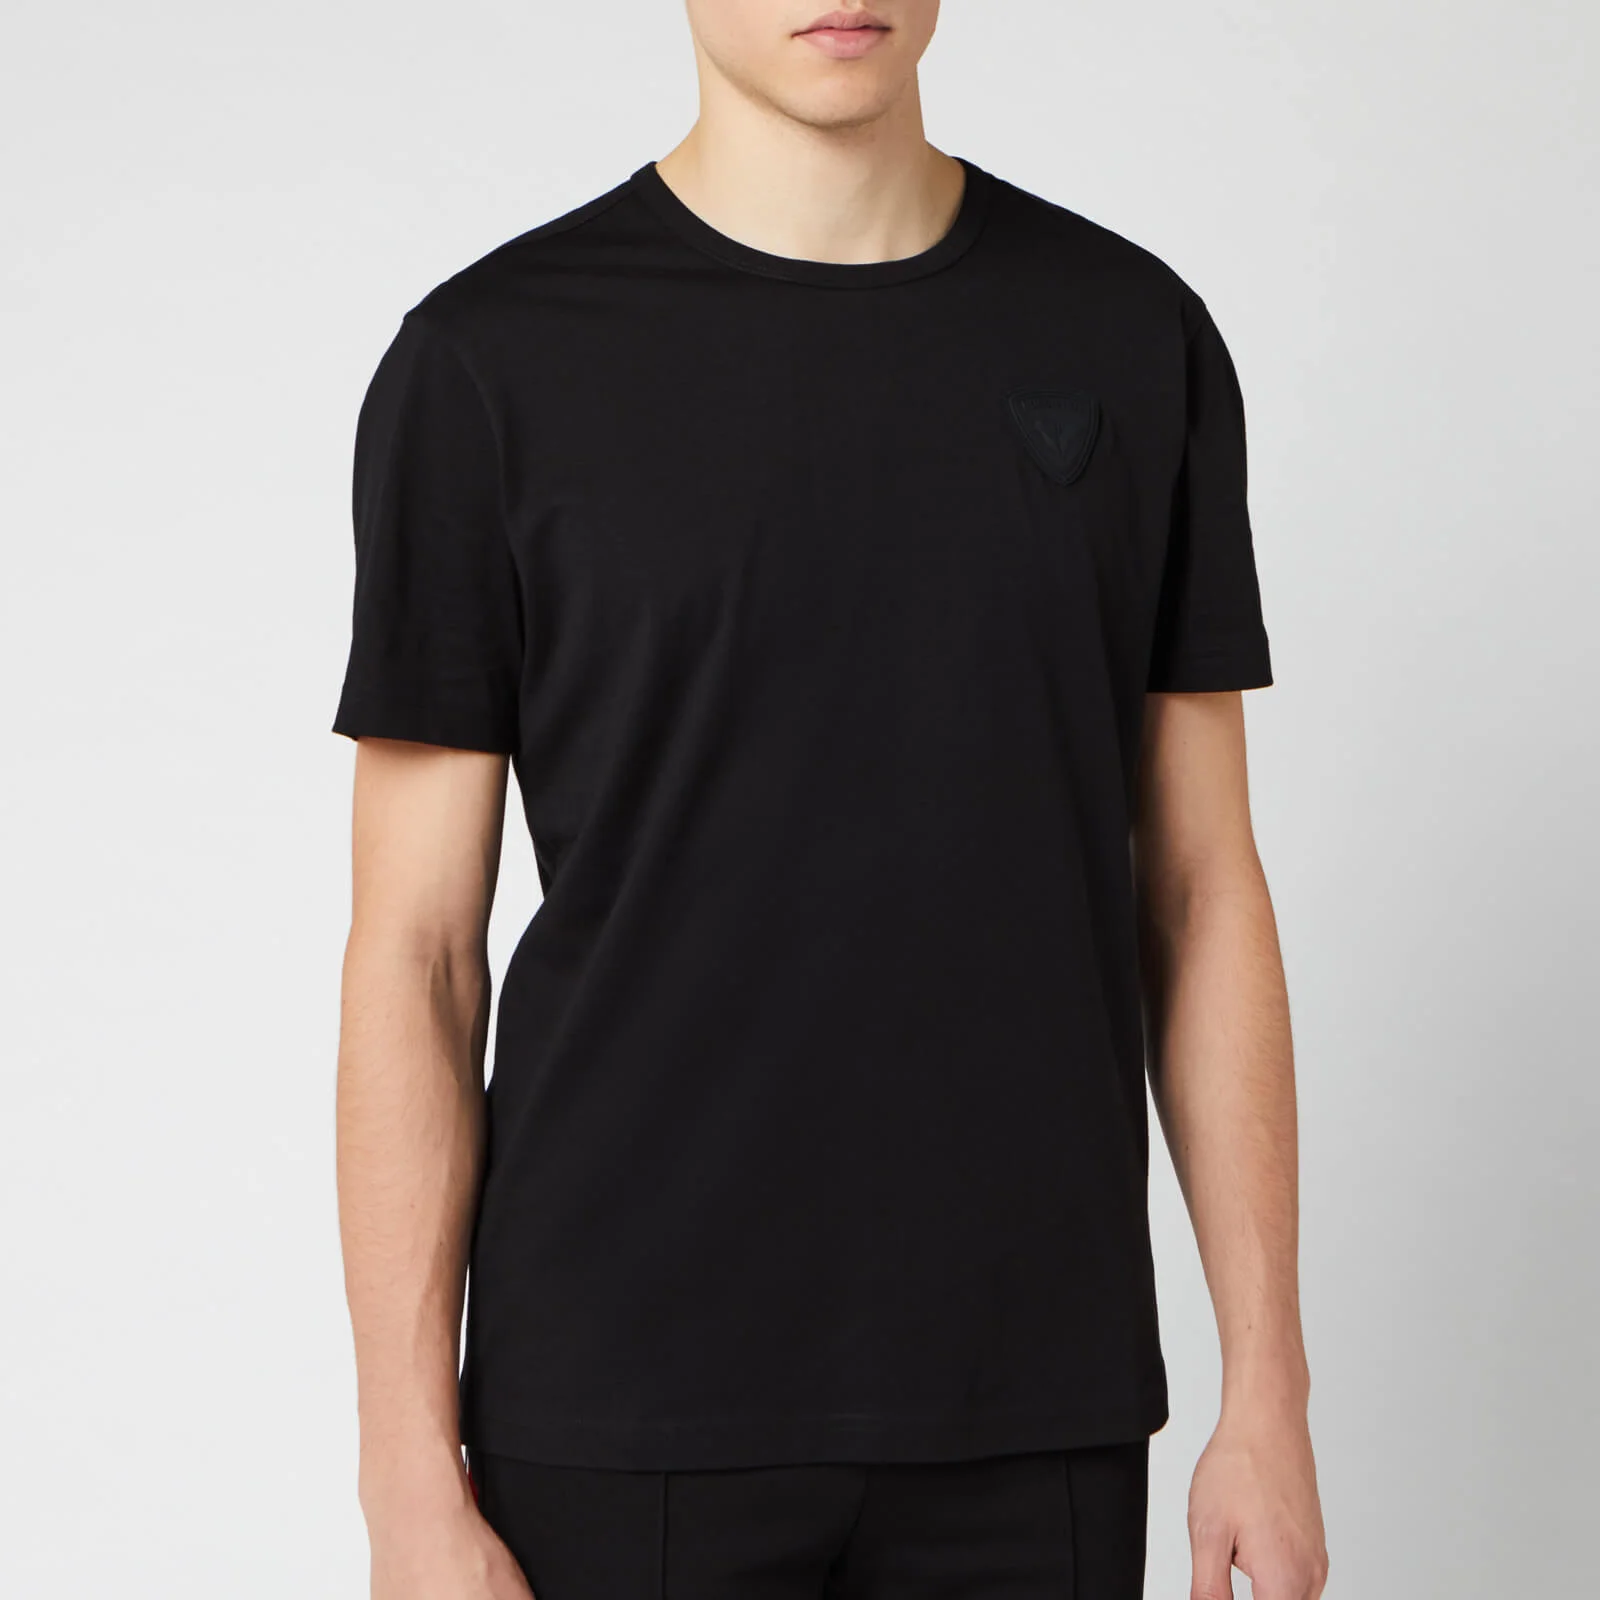 Rossignol Men's Classic T-Shirt - Black Image 1